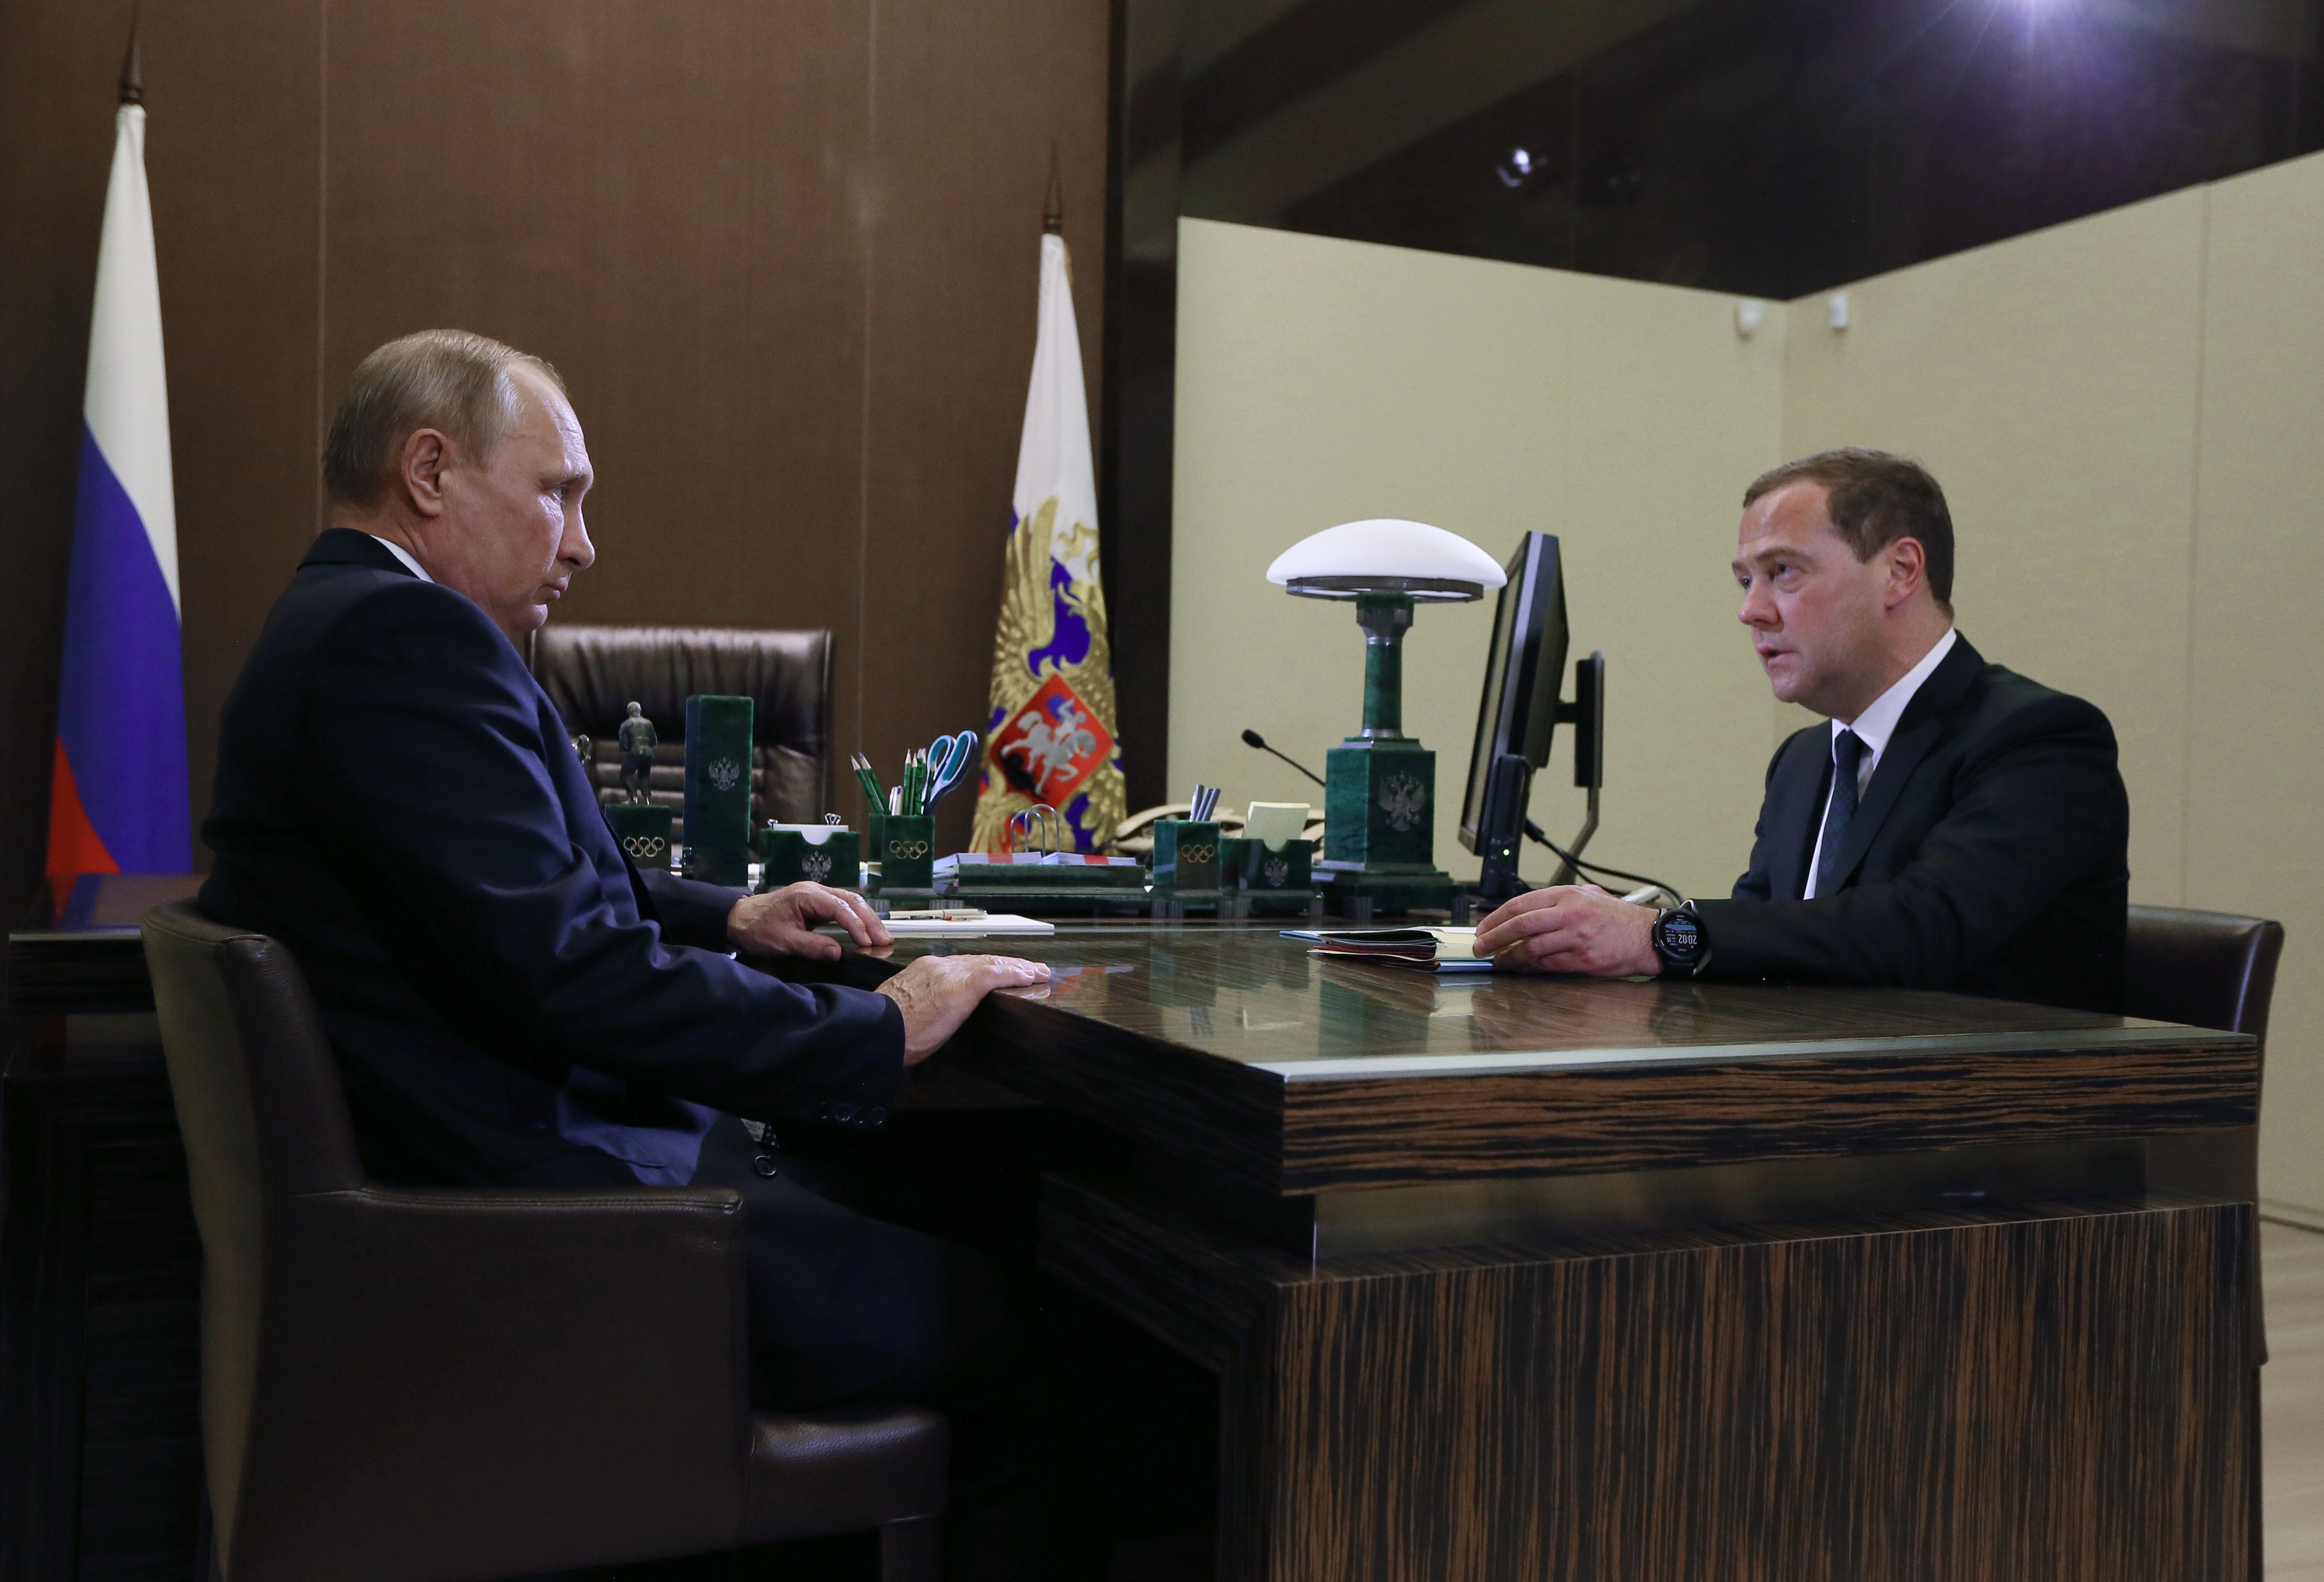 Новое правительство новая жизнь. Кабинет Медведева. Медведев в кабинете. Тупик Путина.